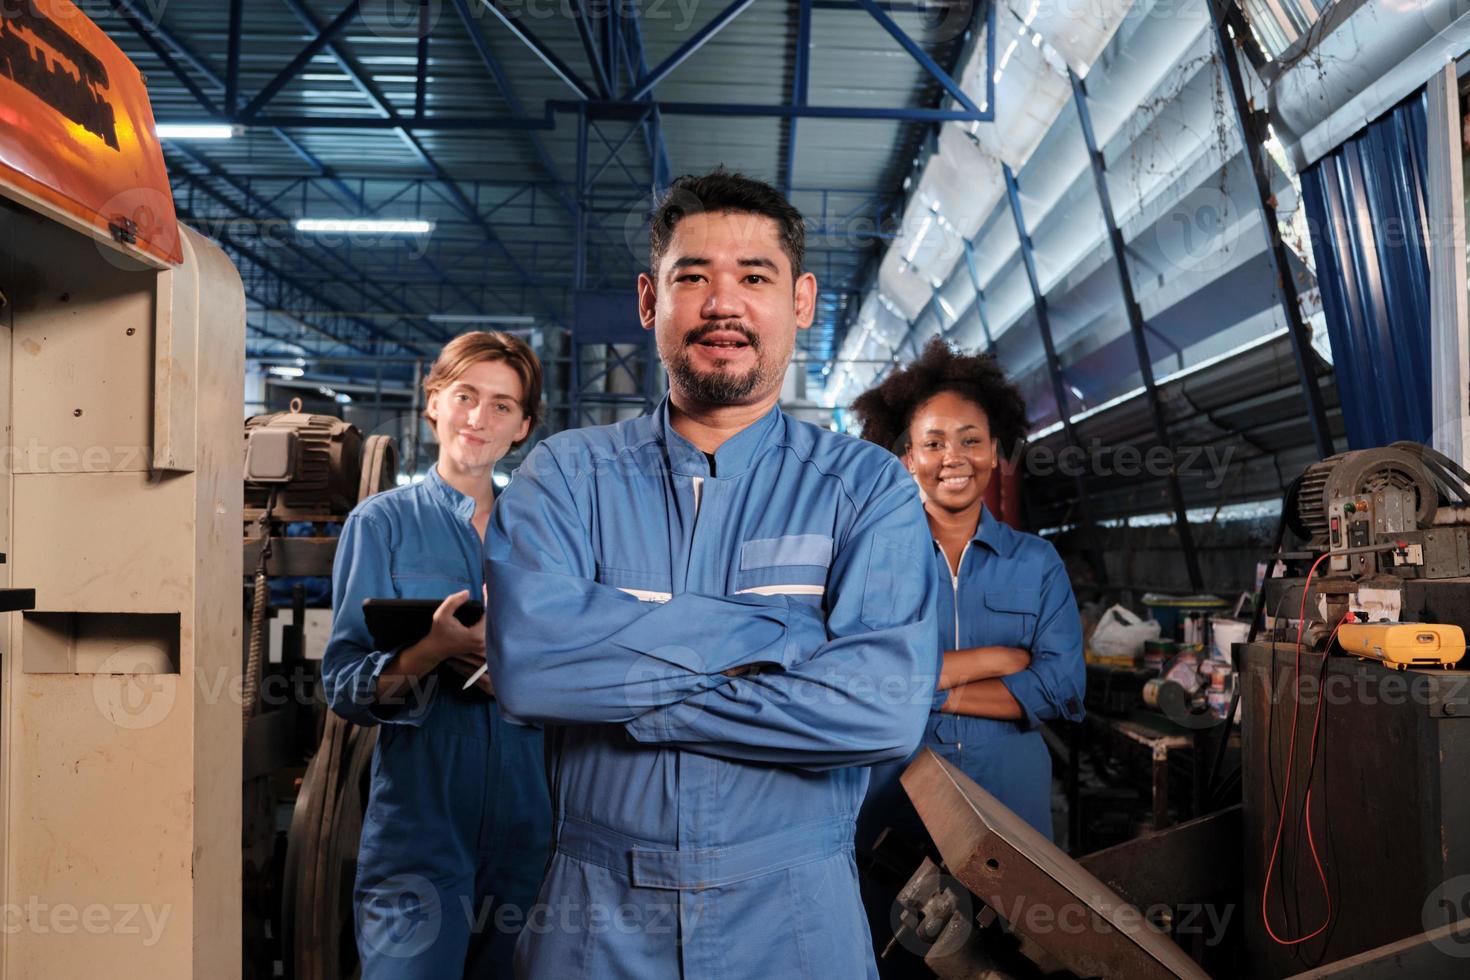 les travailleurs de l'industrie multiraciale en uniformes de sécurité collaborent avec l'unité, les bras croisés et expriment un travail heureux avec le sourire et la joie dans une usine mécanique, profession d'ingénieur professionnel. photo